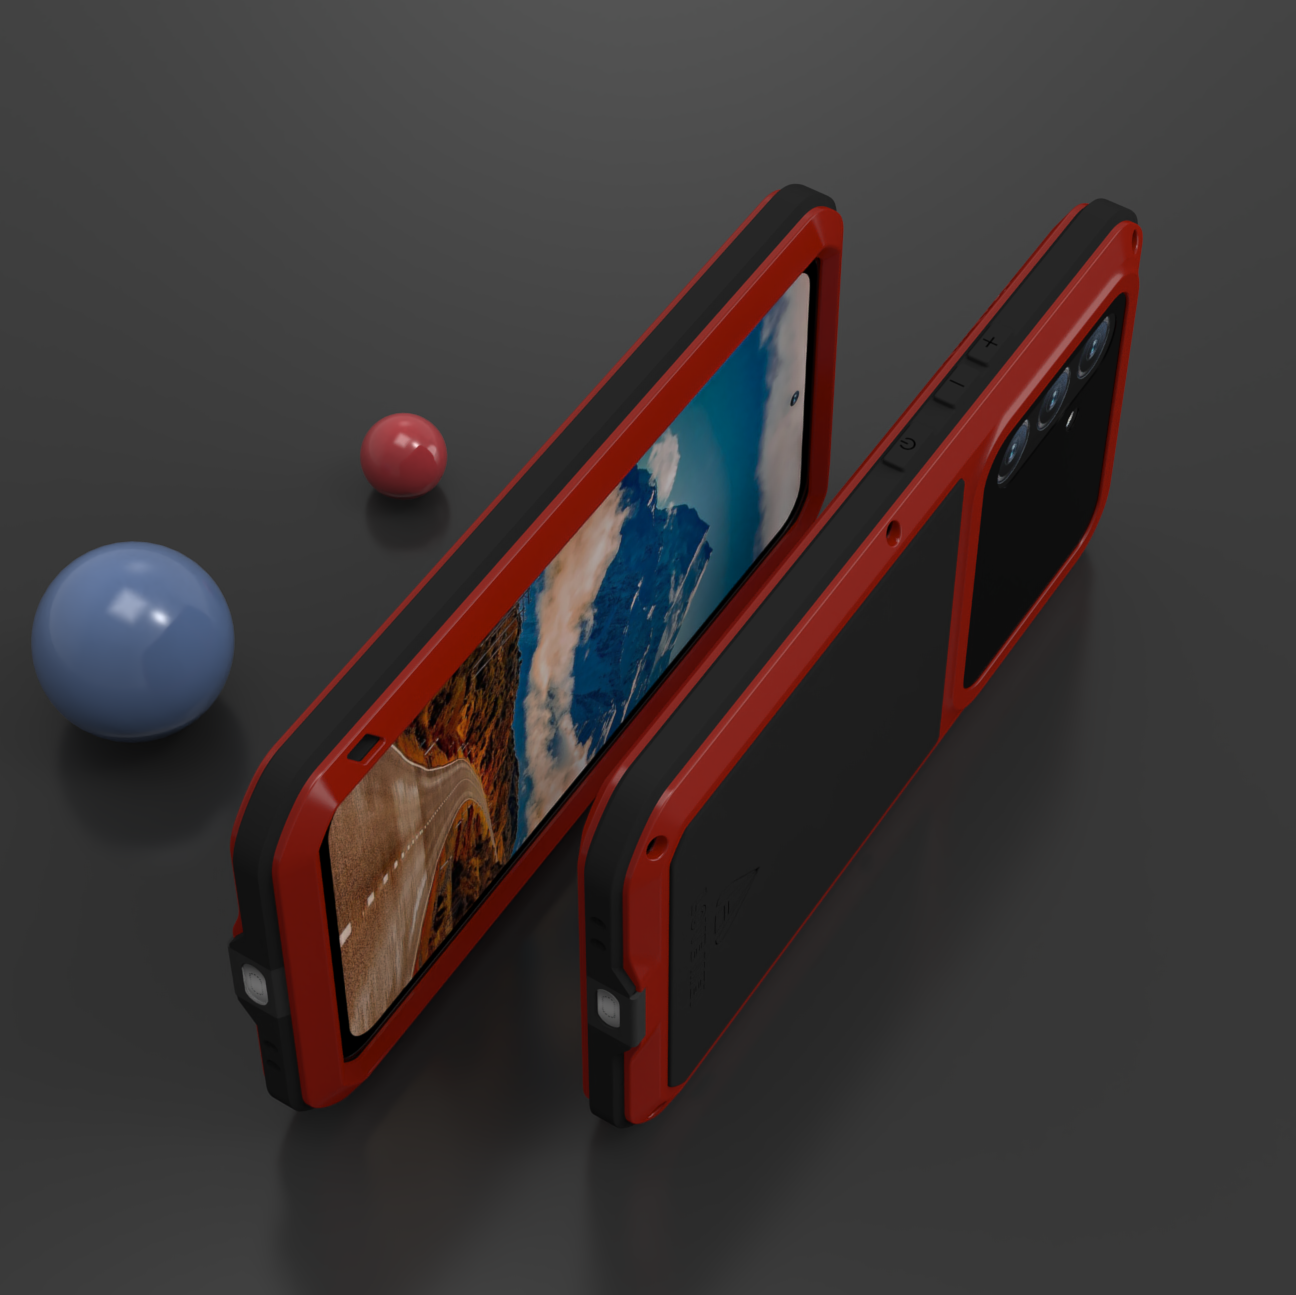 Gepanzerte Schutzhülle für Galaxy A54 5G, Love Mei Powerful, Rot